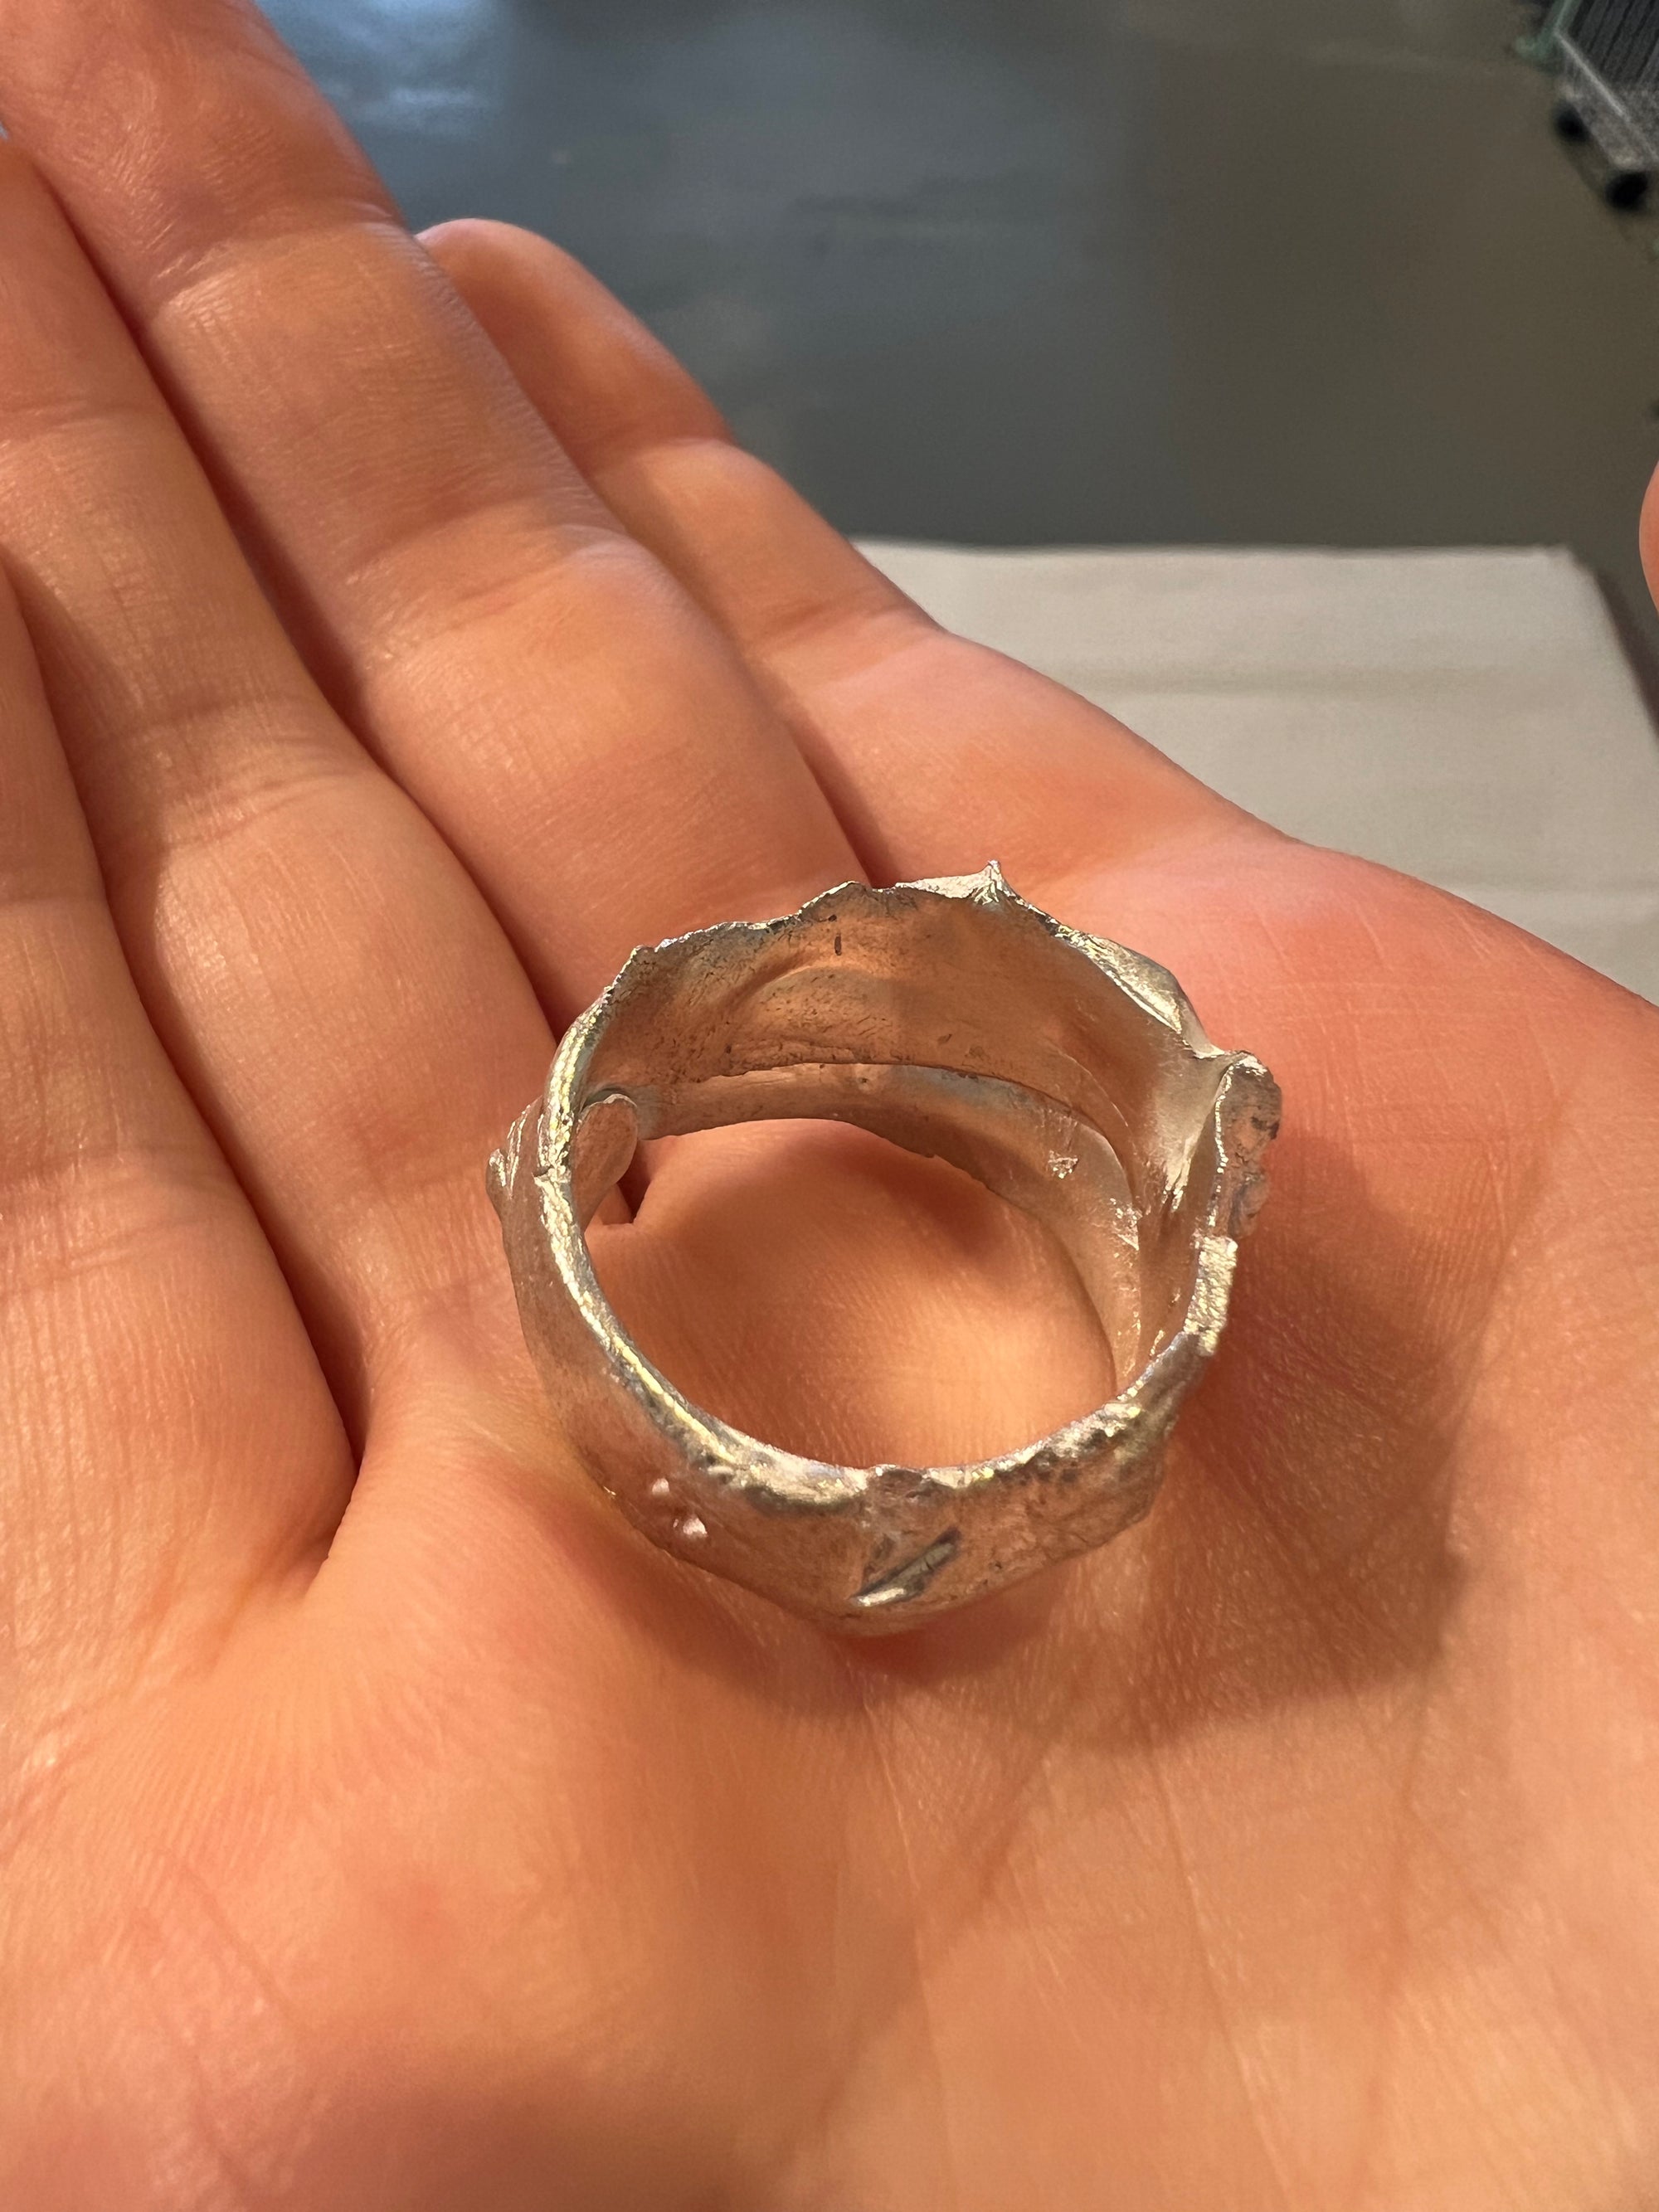 Produktbild von oben von Ringsbyclausen Ring tattered von Der seite In der Hand 